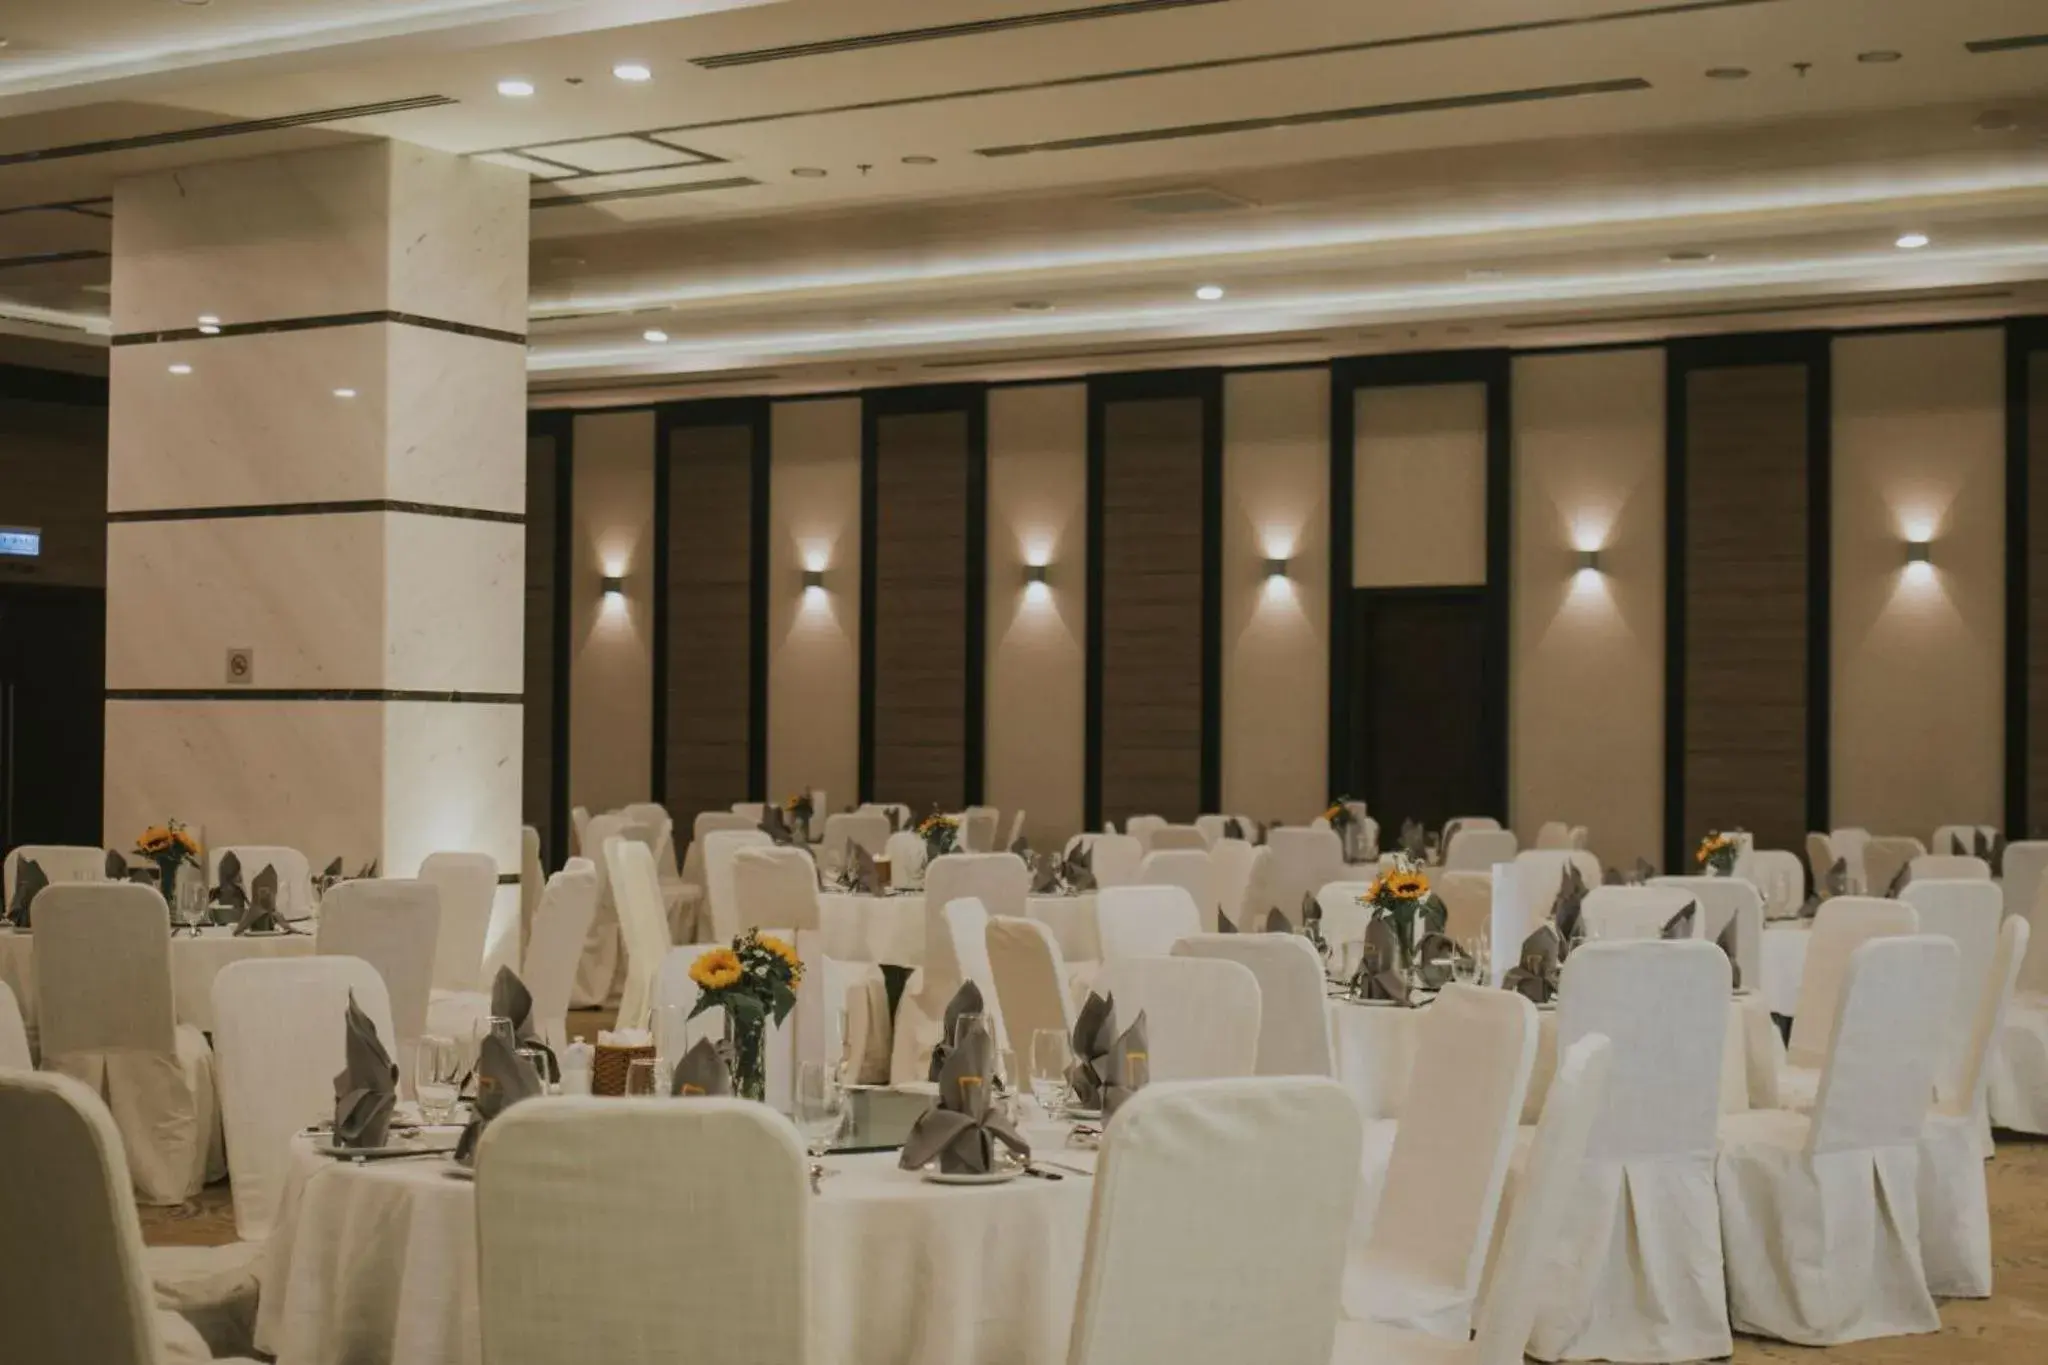 Banquet/Function facilities, Banquet Facilities in Malibu Hotel